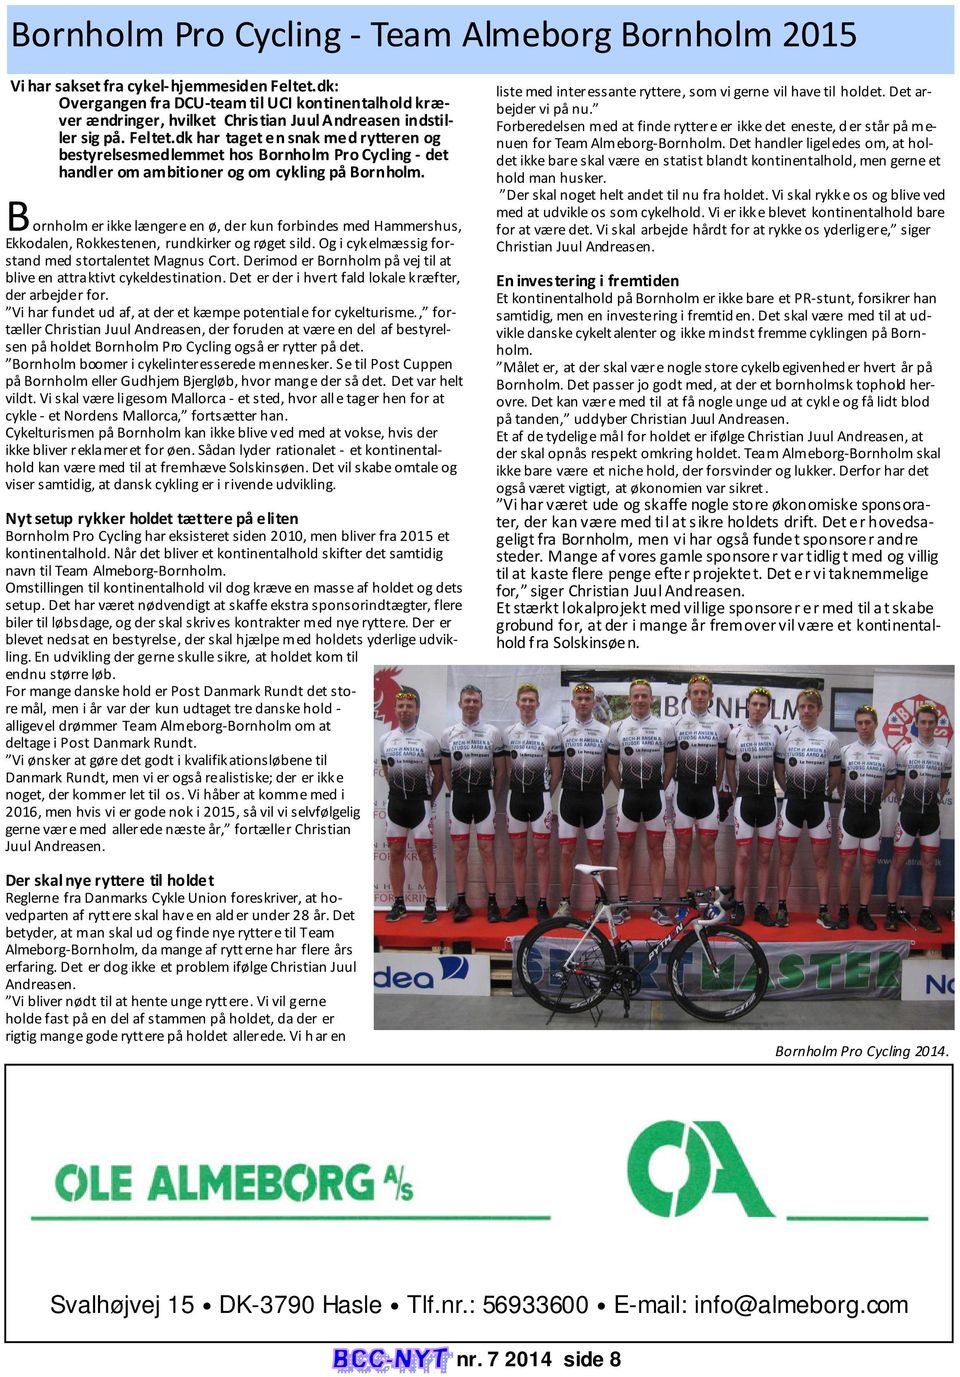 dk har taget en snak med rytteren og bestyrelsesmedlemmet hos Bornholm Pro Cycling - det handler om ambitioner og om cykling på Bornholm.